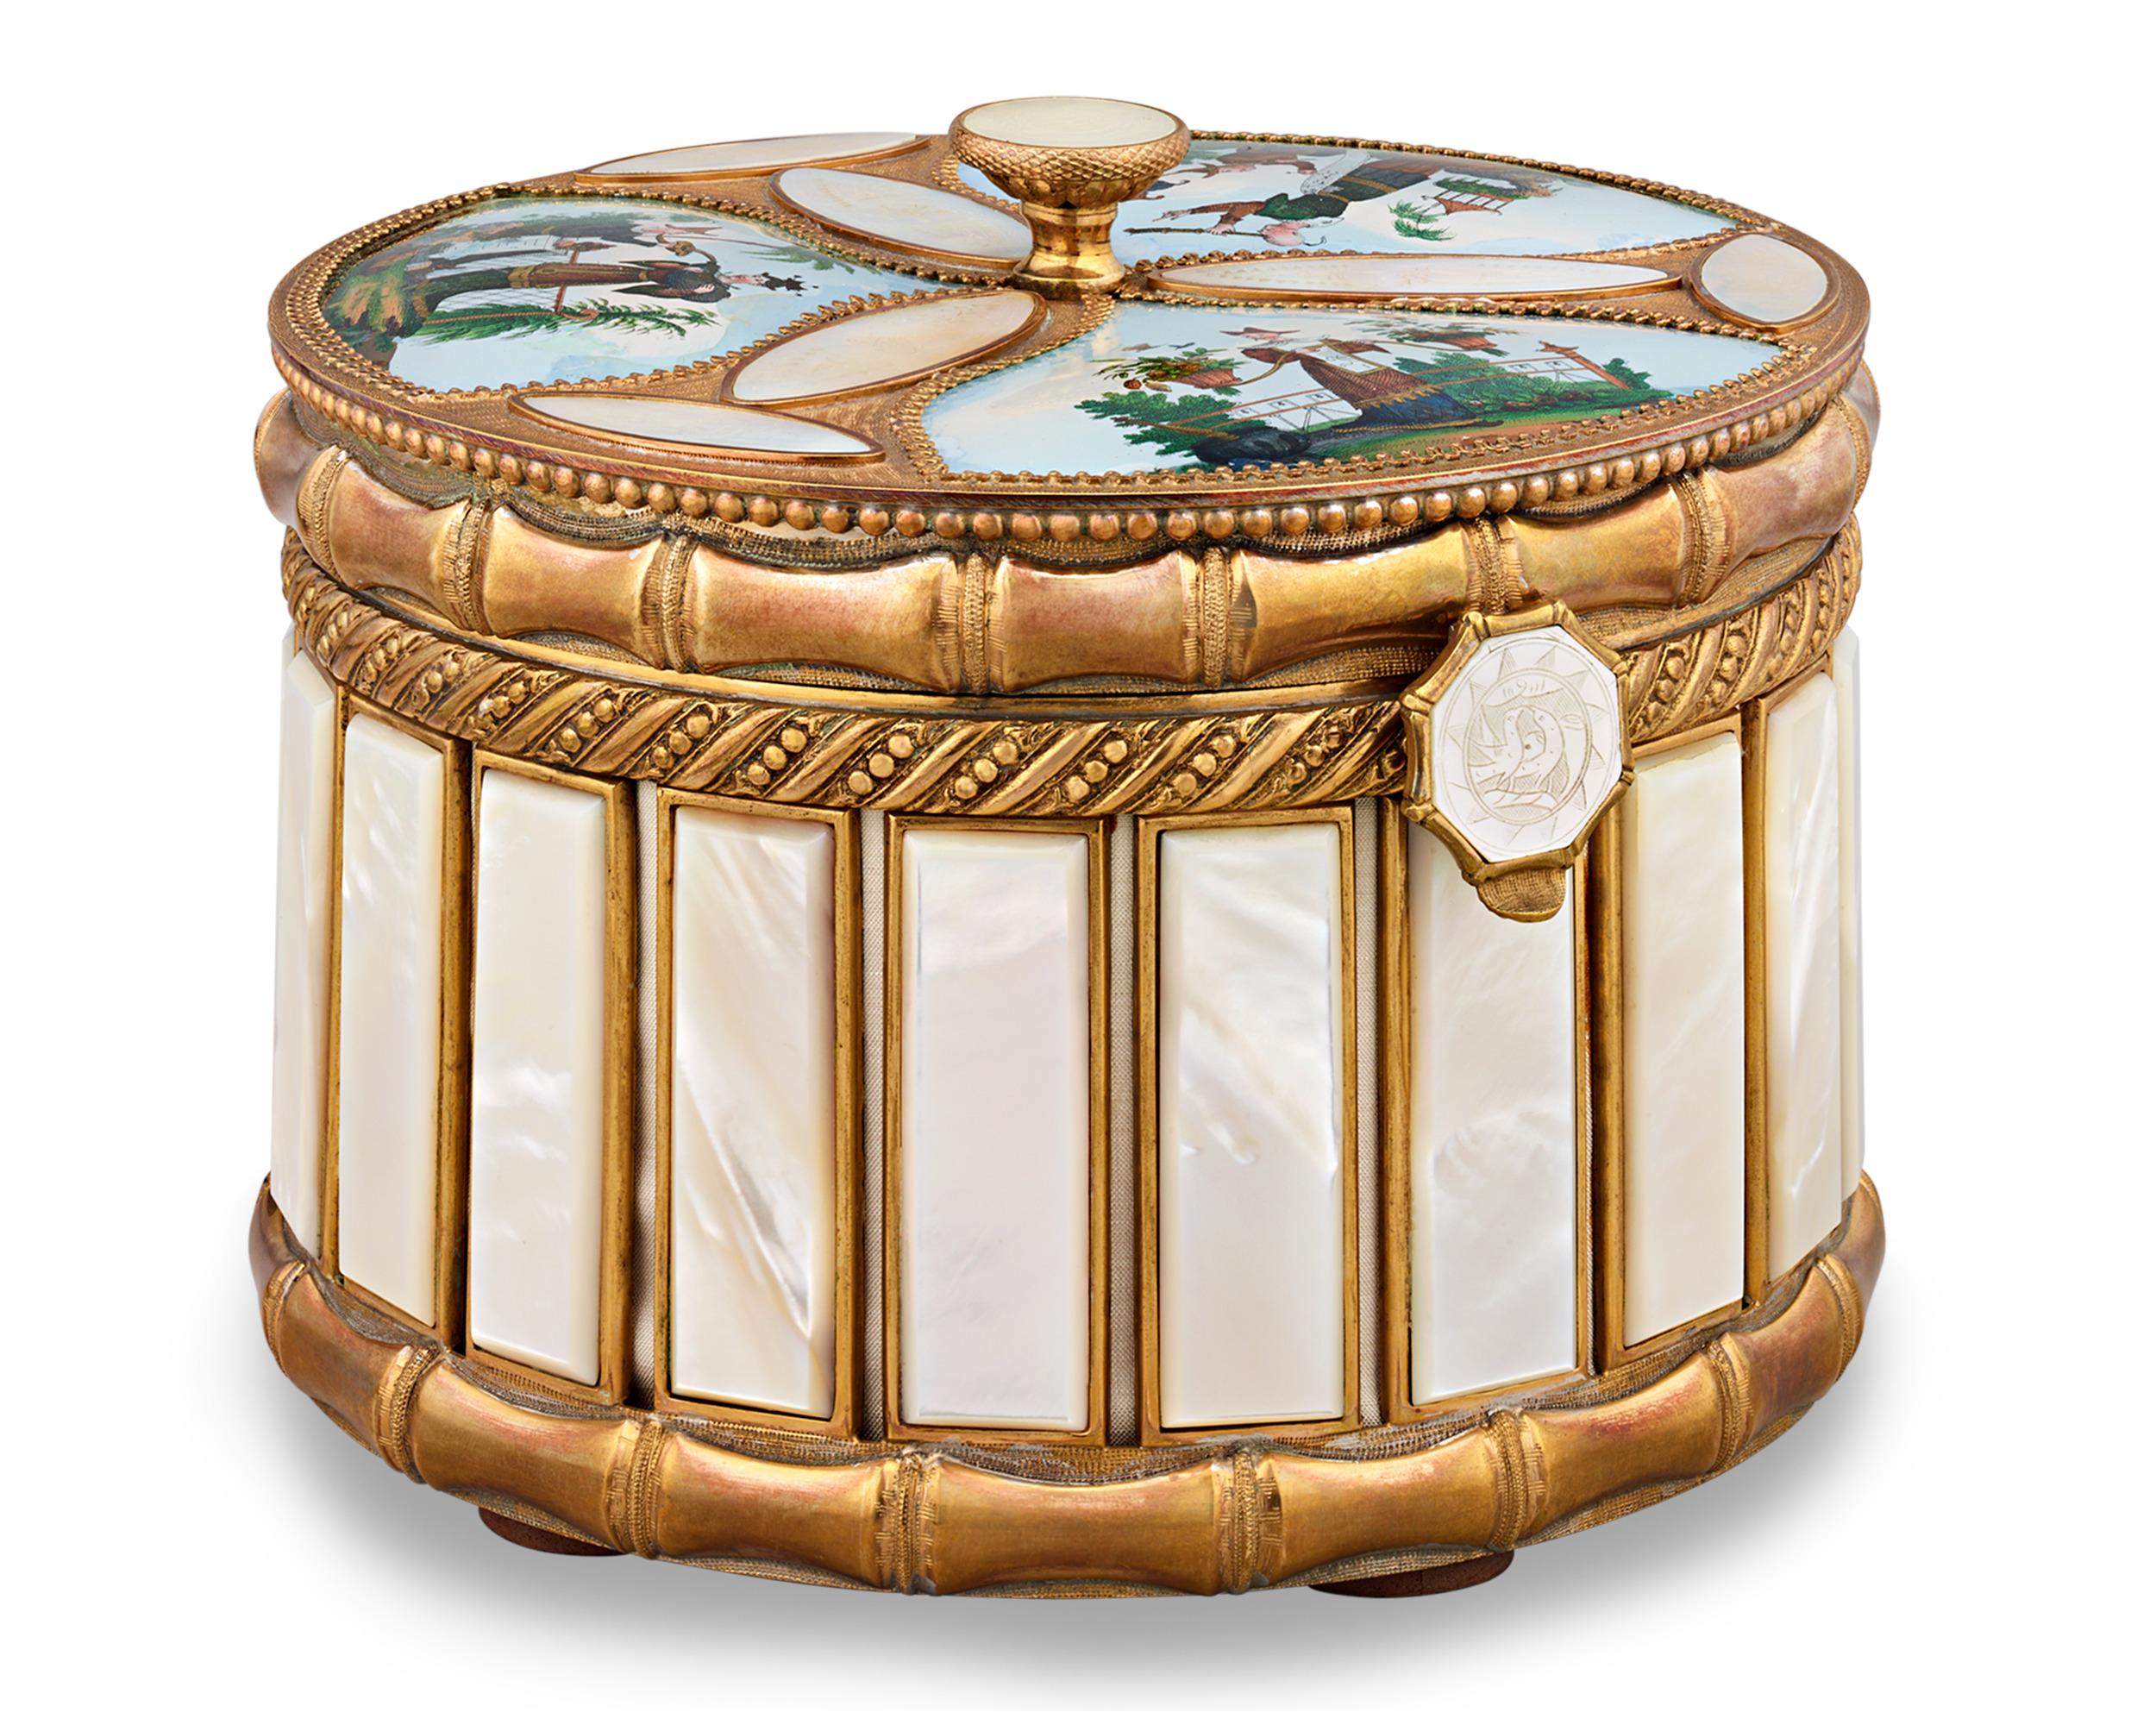 Cette boîte à parfum en incrustation de nacre est un trésor rare et complet provenant du célèbre Palais-Royal du Second Empire français. Le coffret est une œuvre d'art, méticuleusement façonnée pour ravir un connaisseur de parfums royal. Le